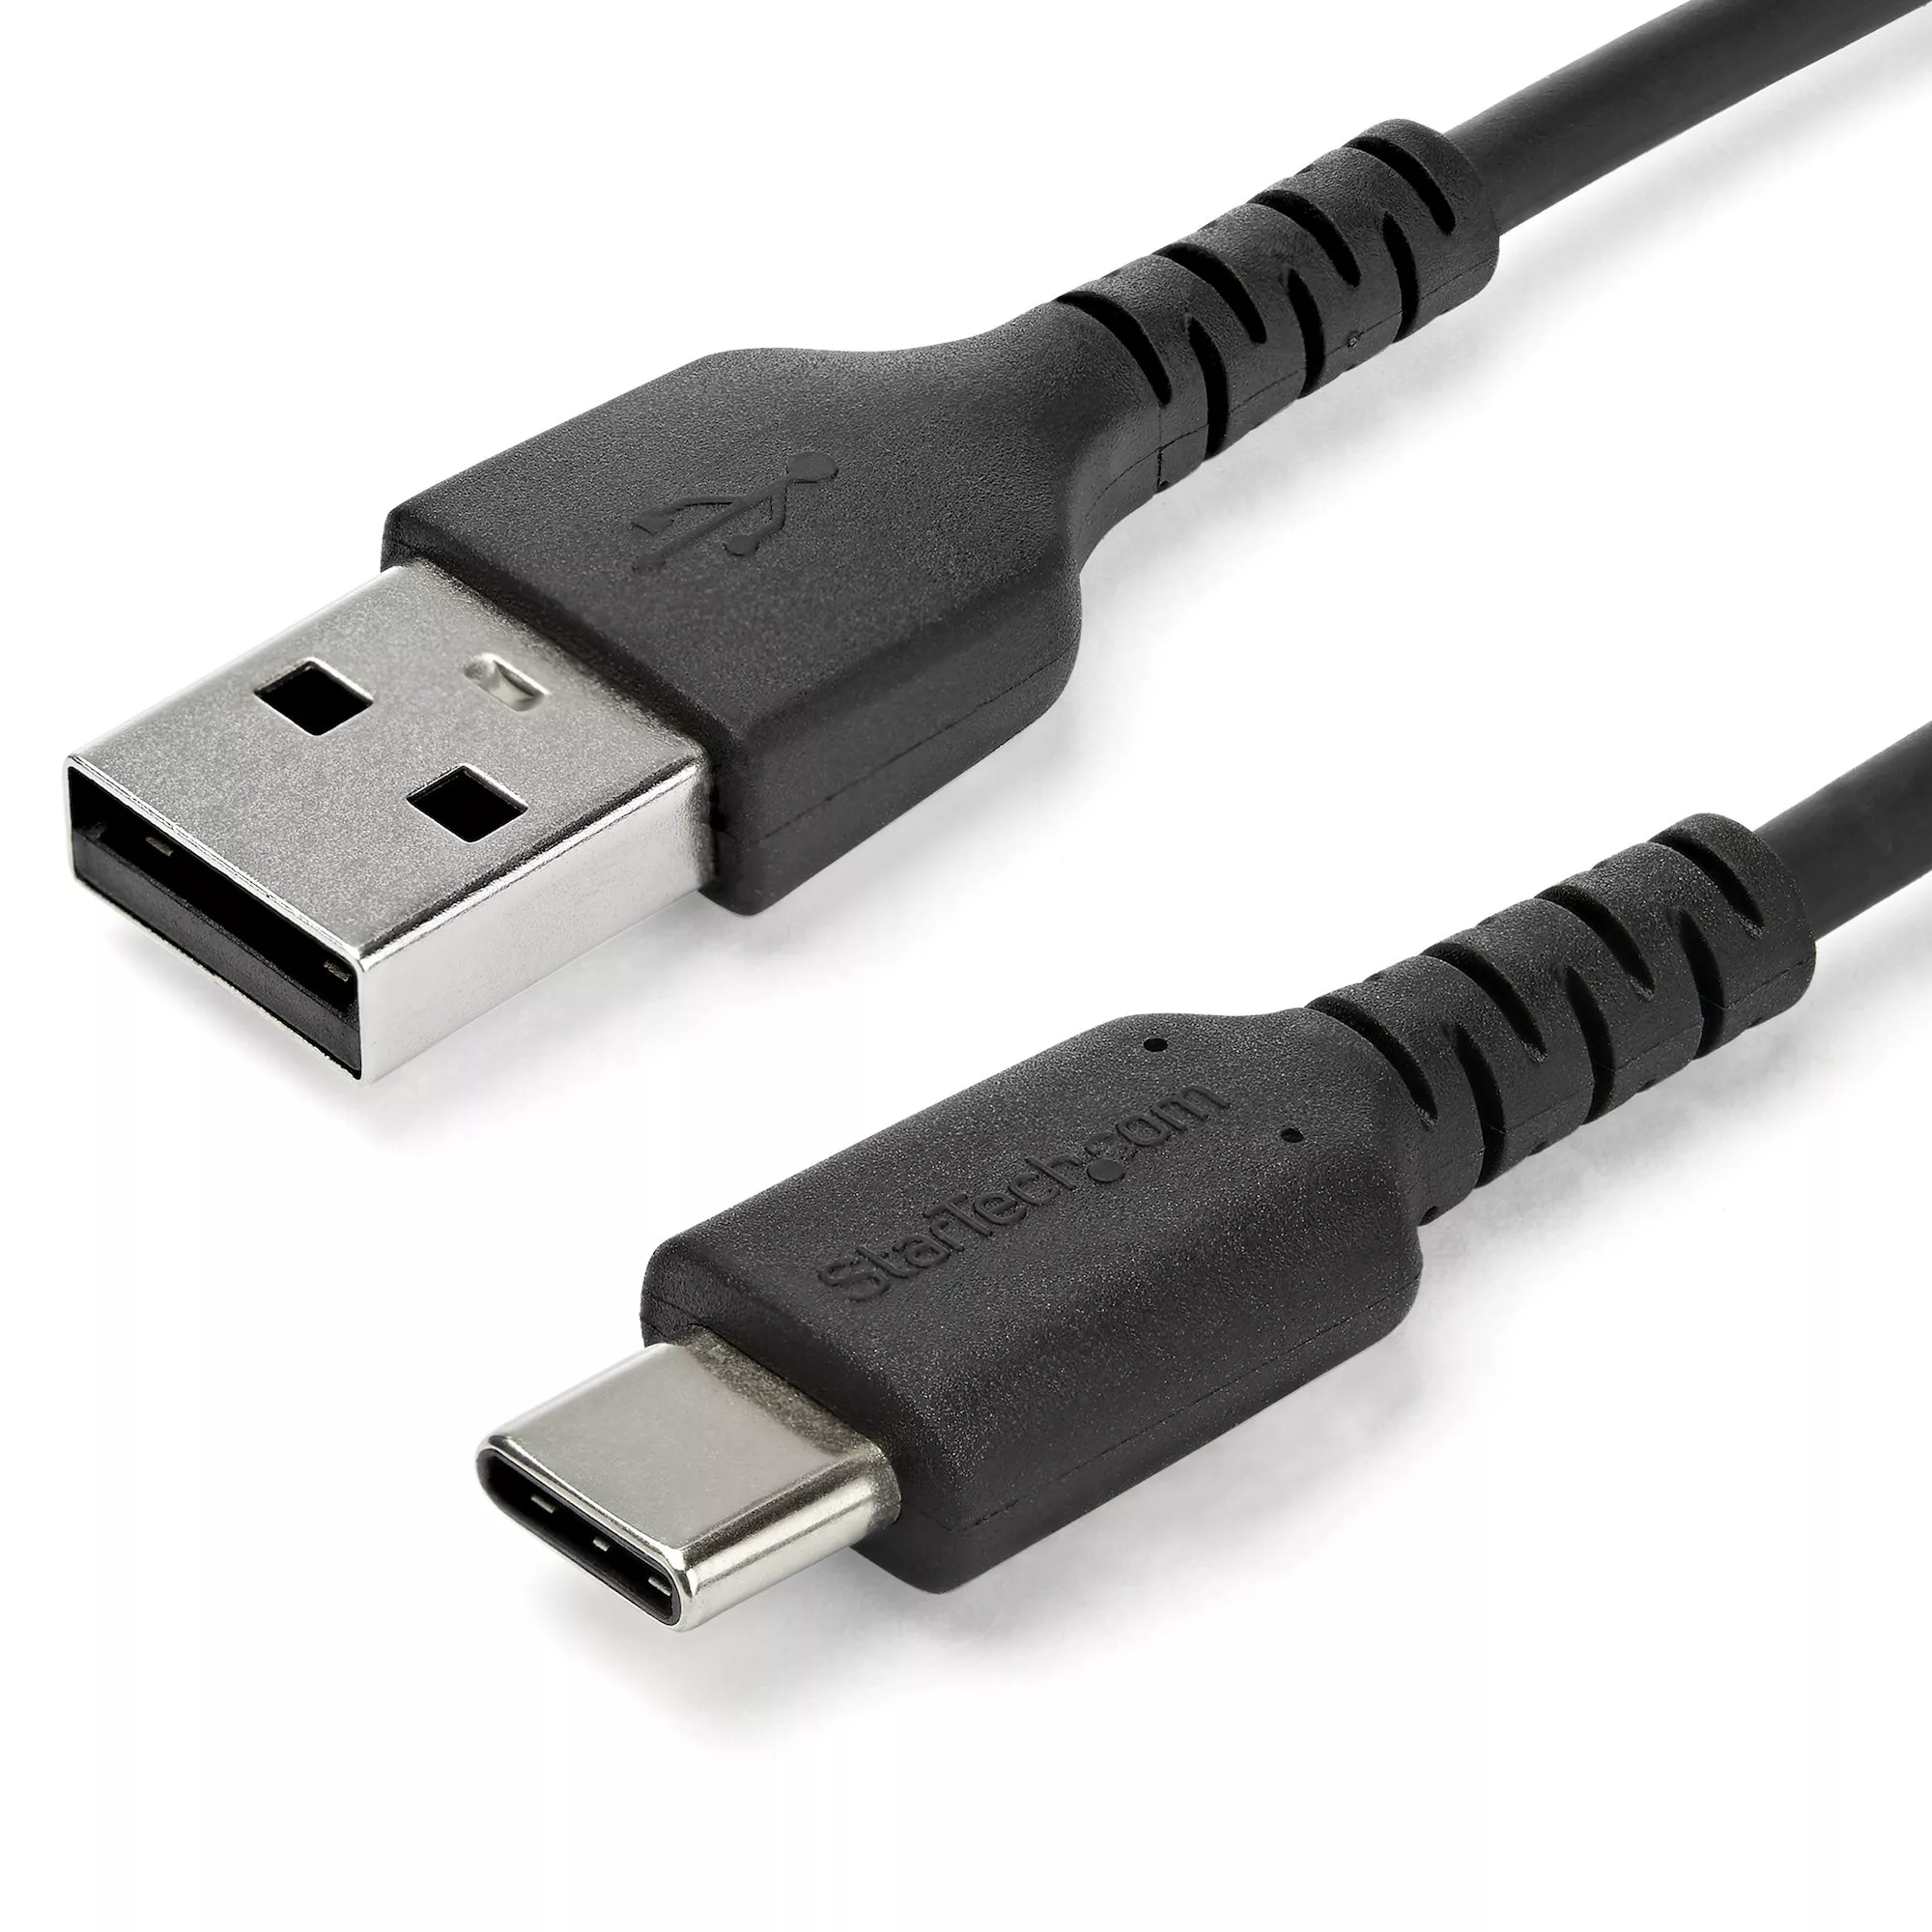 Achat StarTech.com Câble USB-C vers USB 2.0 de 2 m - Noir et autres produits de la marque StarTech.com